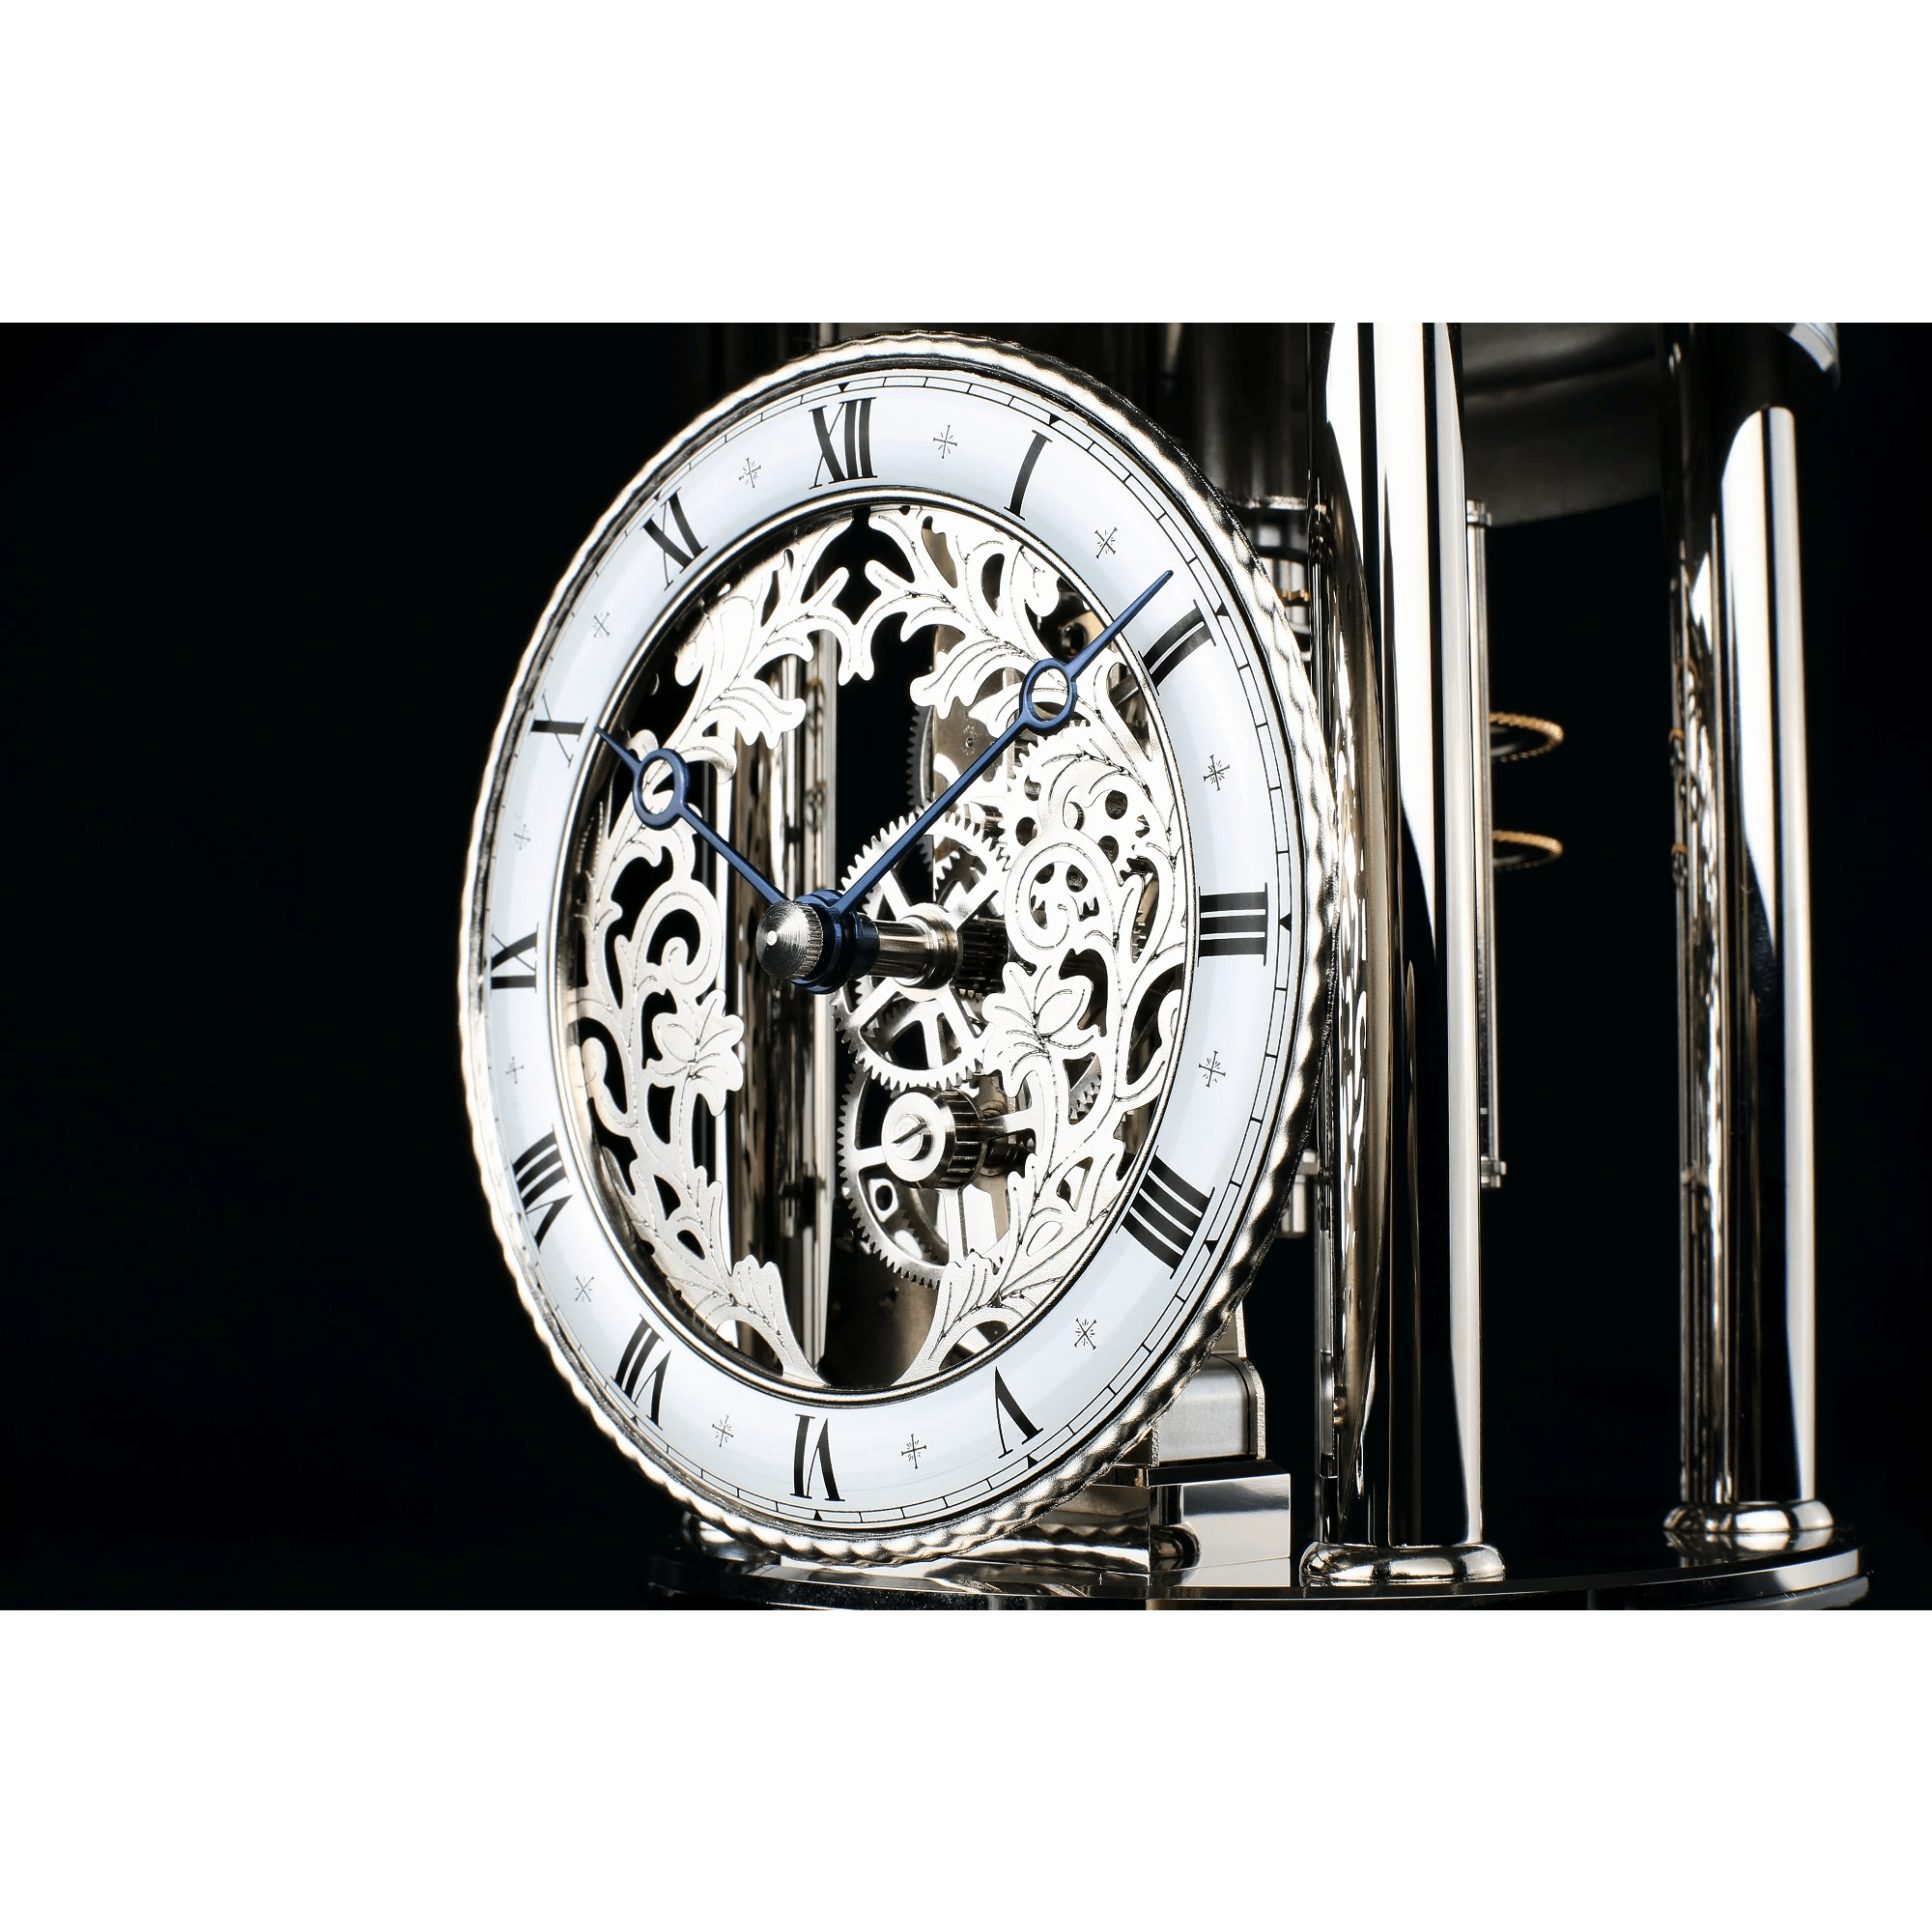 hermle-mantel-clock-astrolabium-quartz-black-22836742987 -2.0